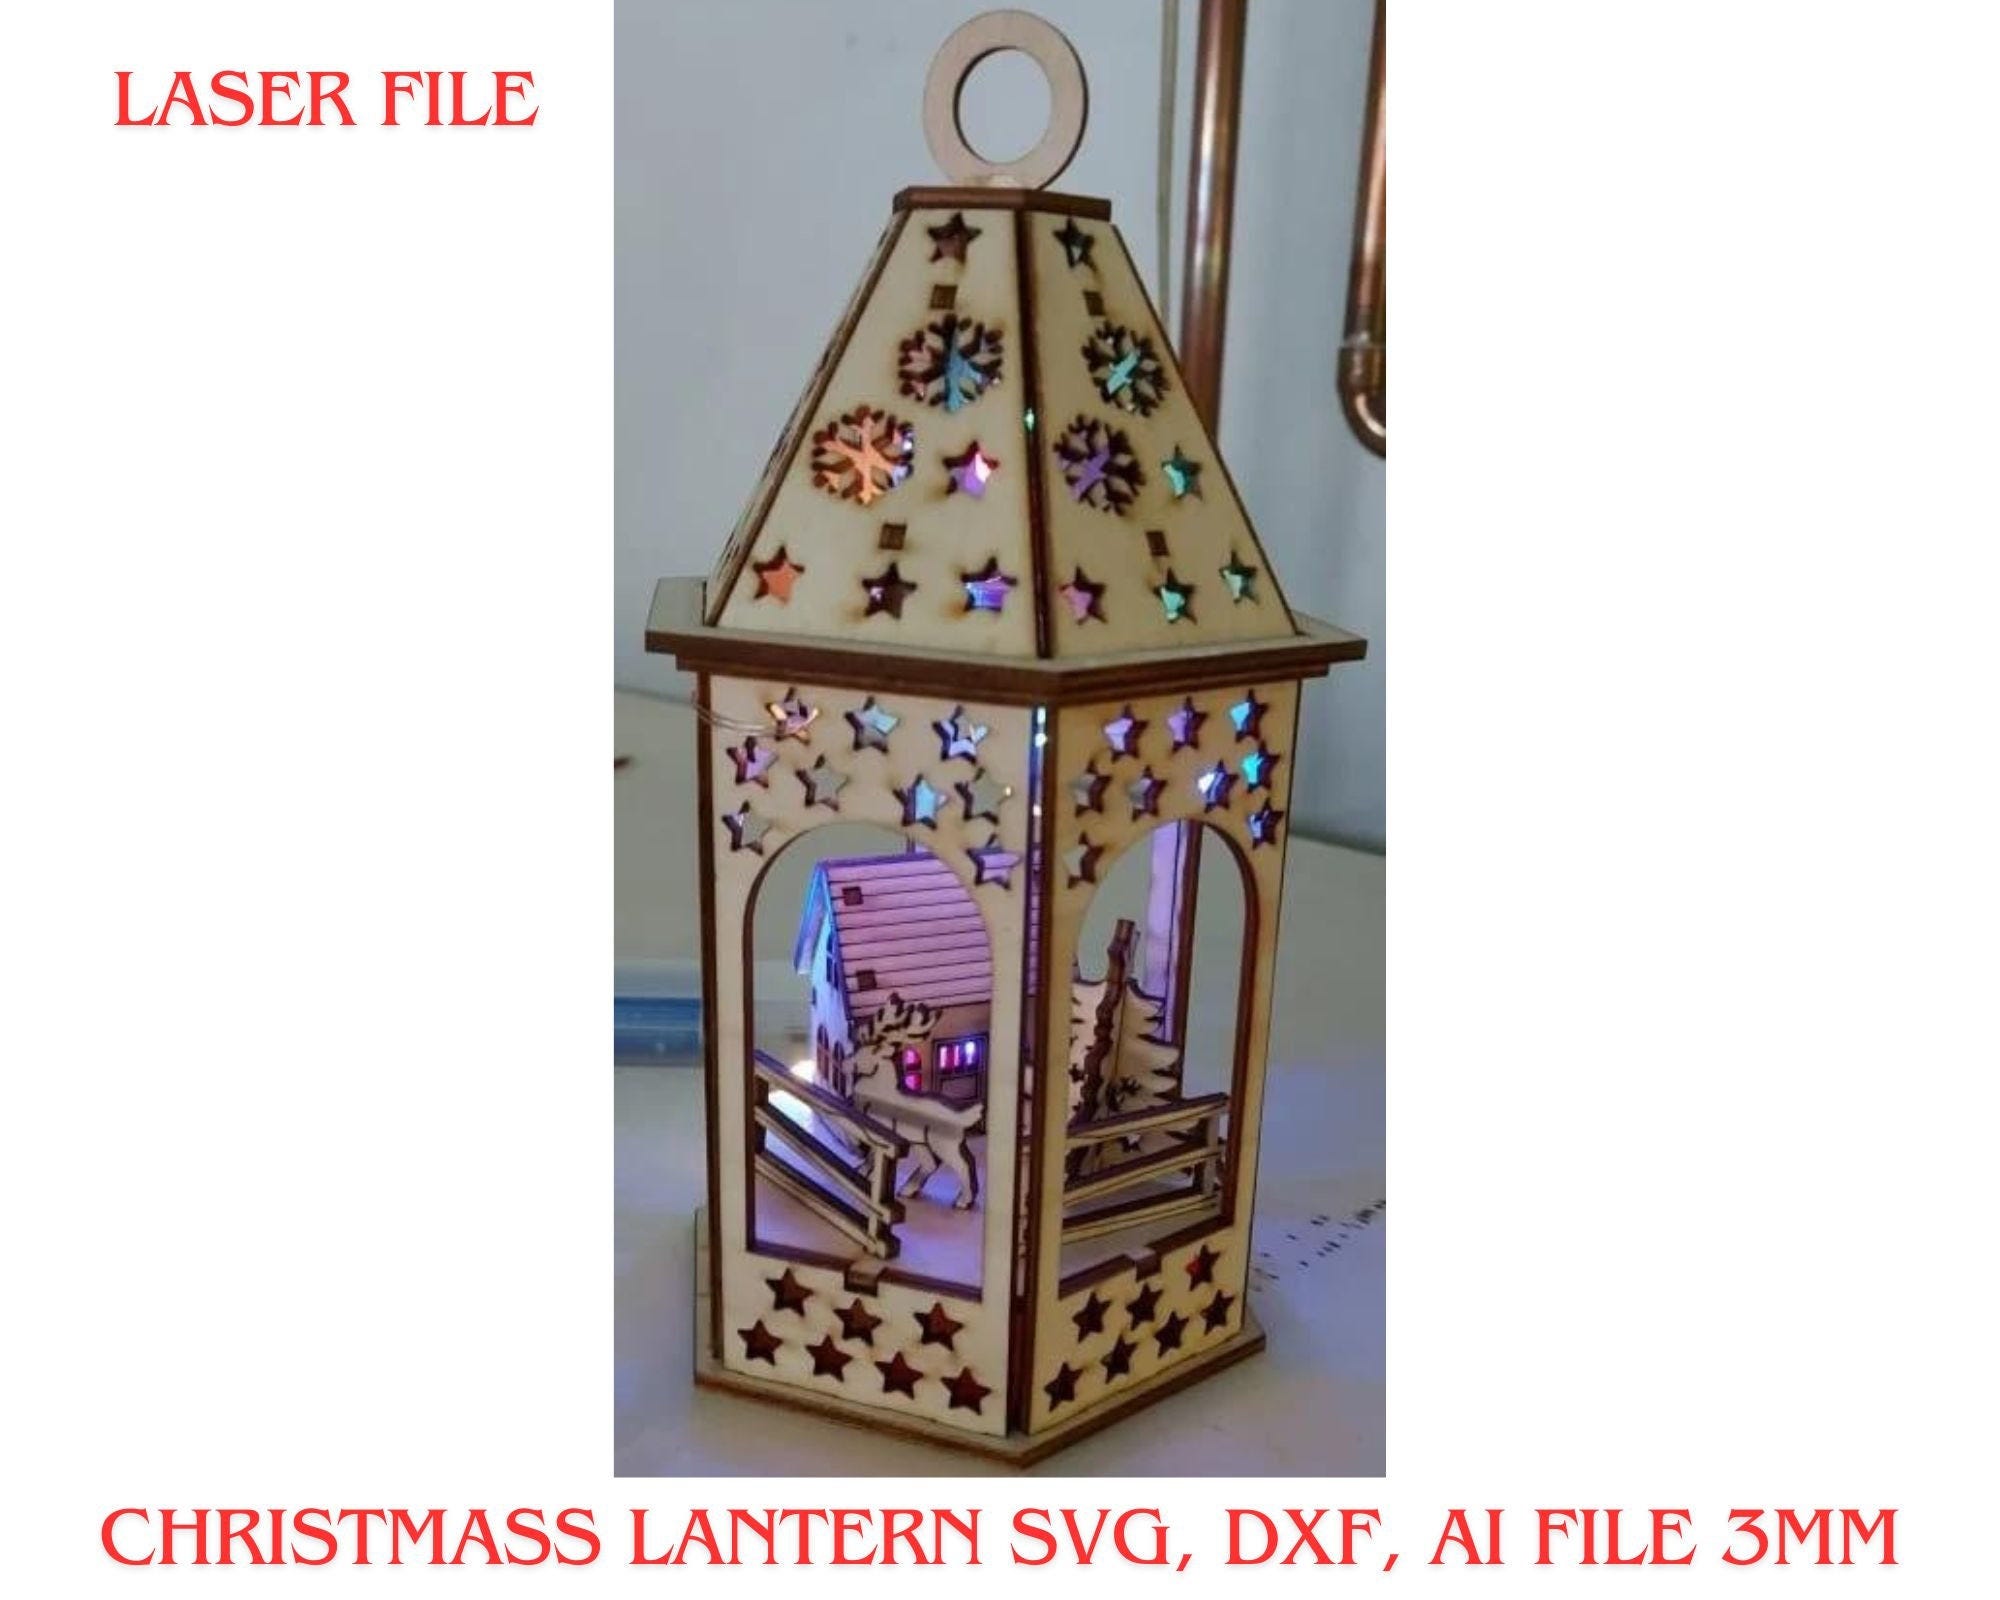 Christmass lantern svg, dxf, ai file 3mm